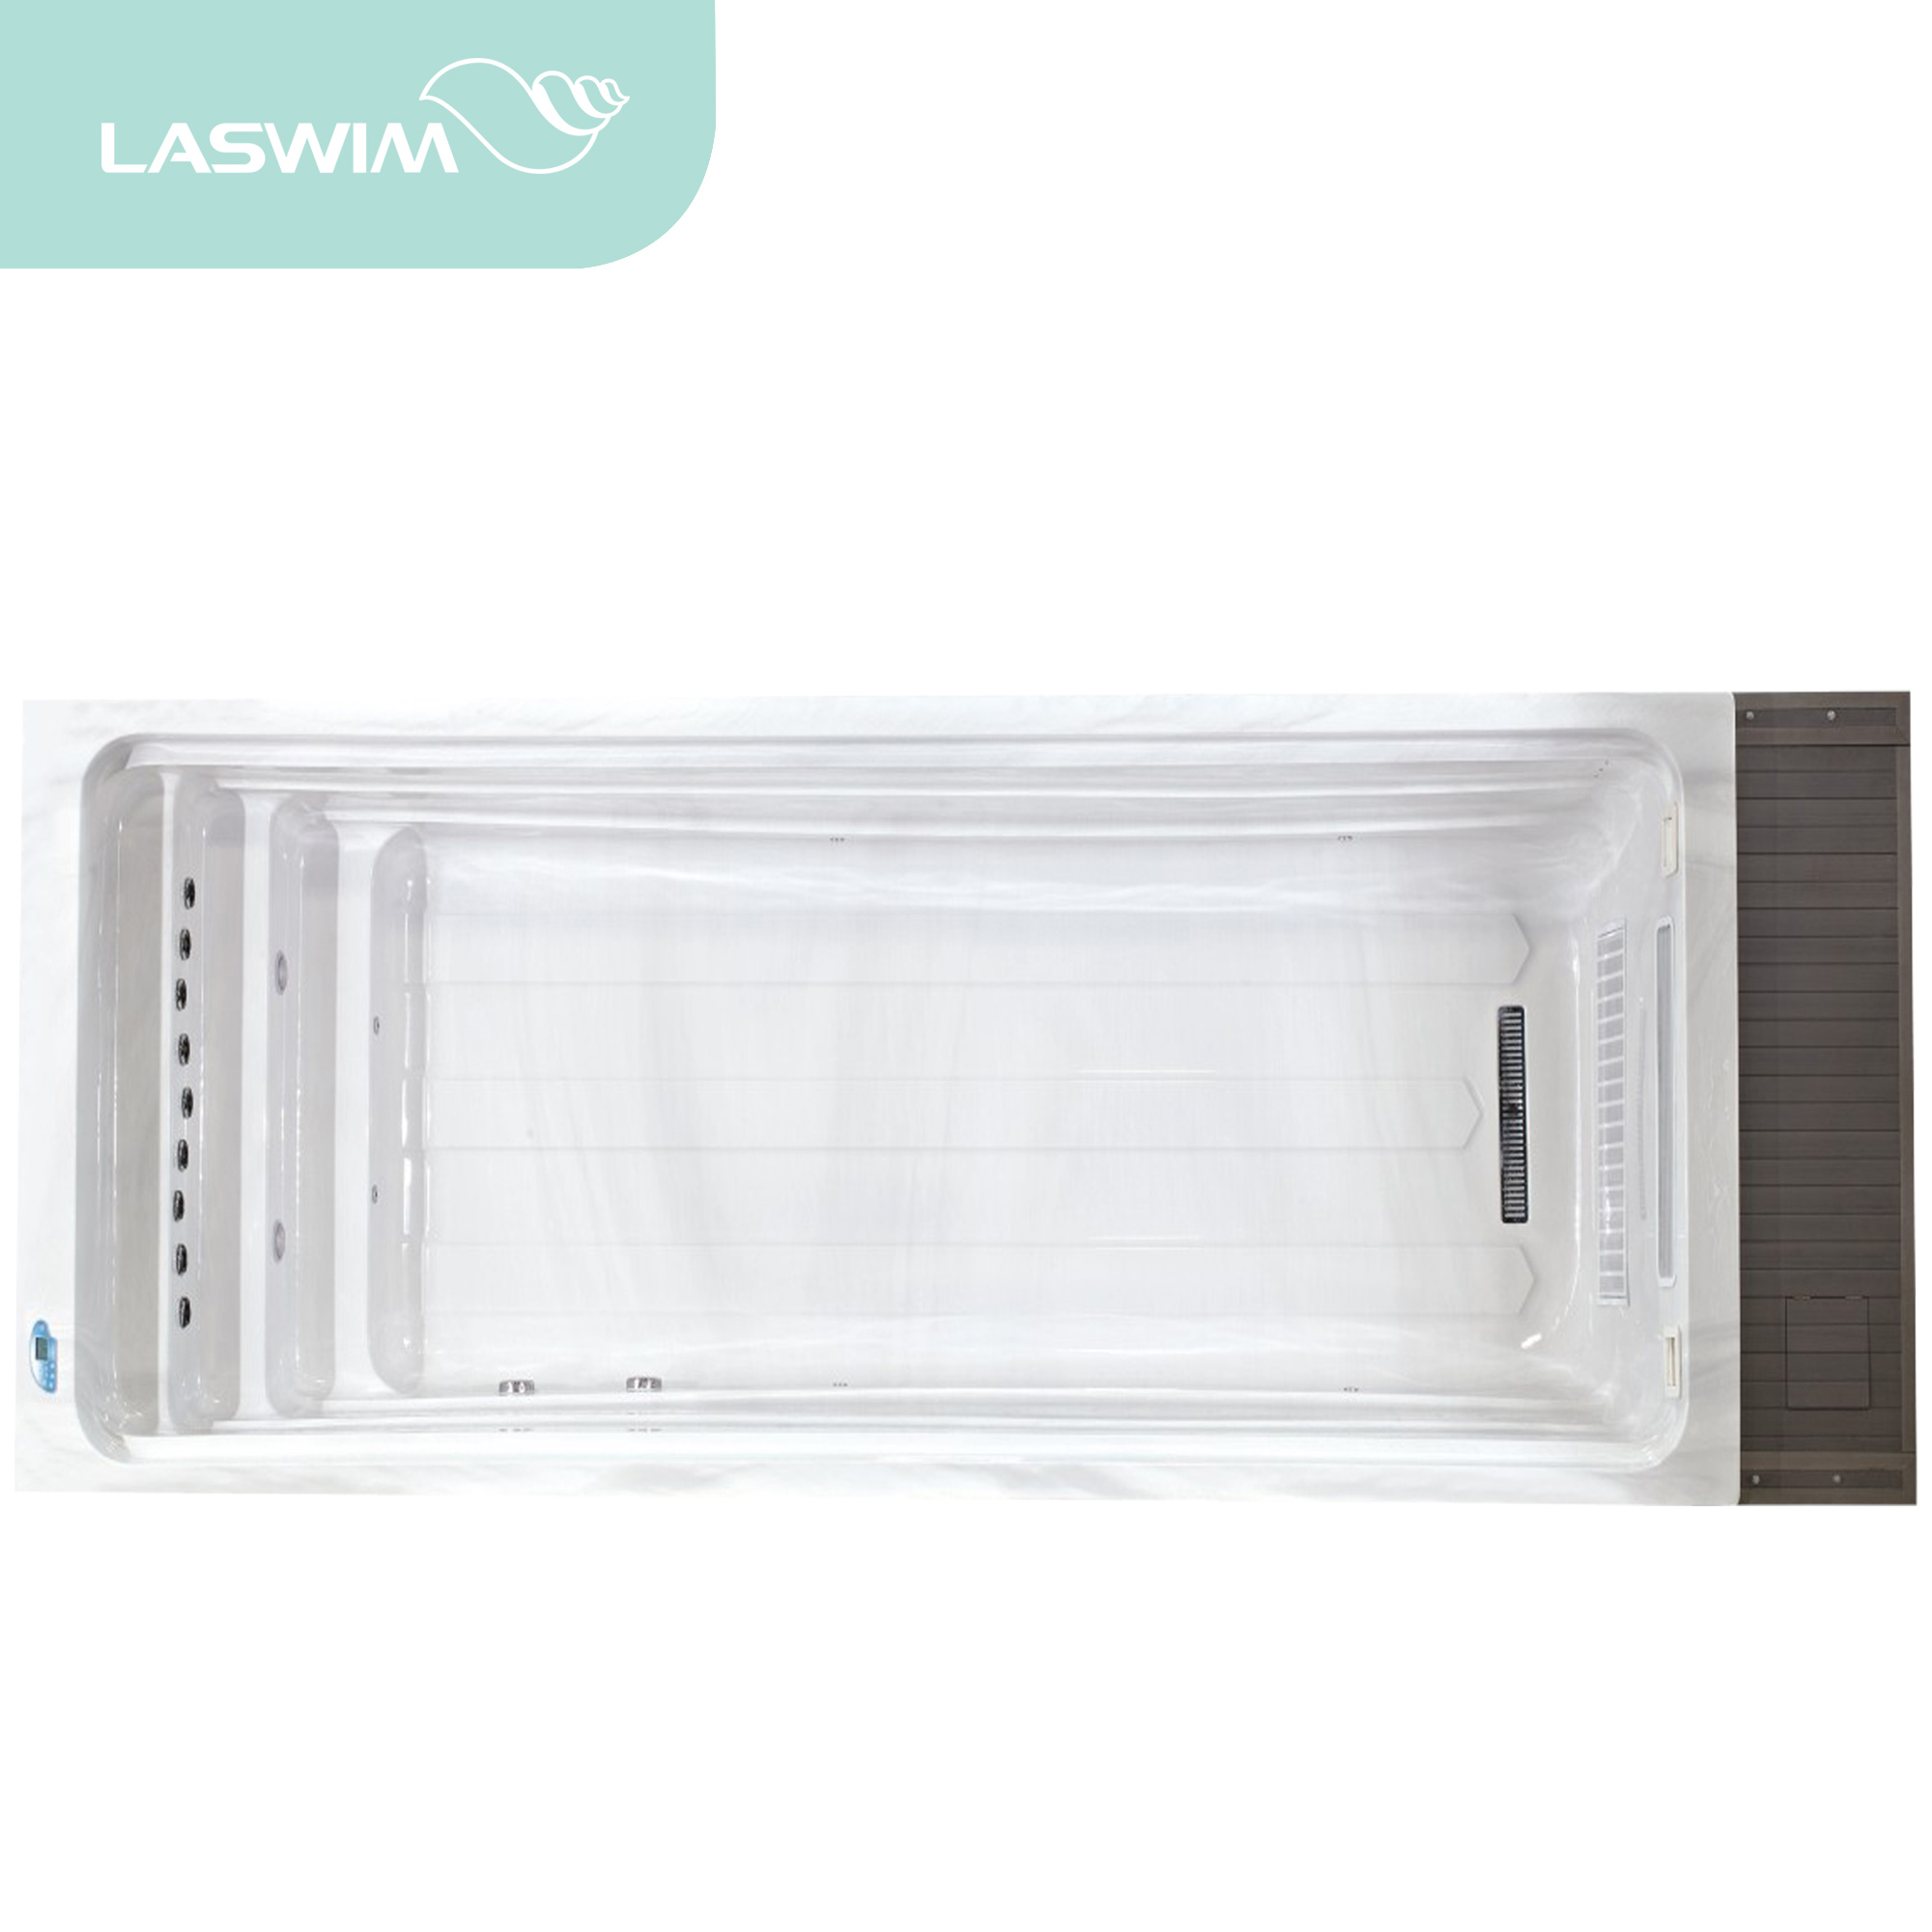 LASWIM SWIM SPA (EP-39)